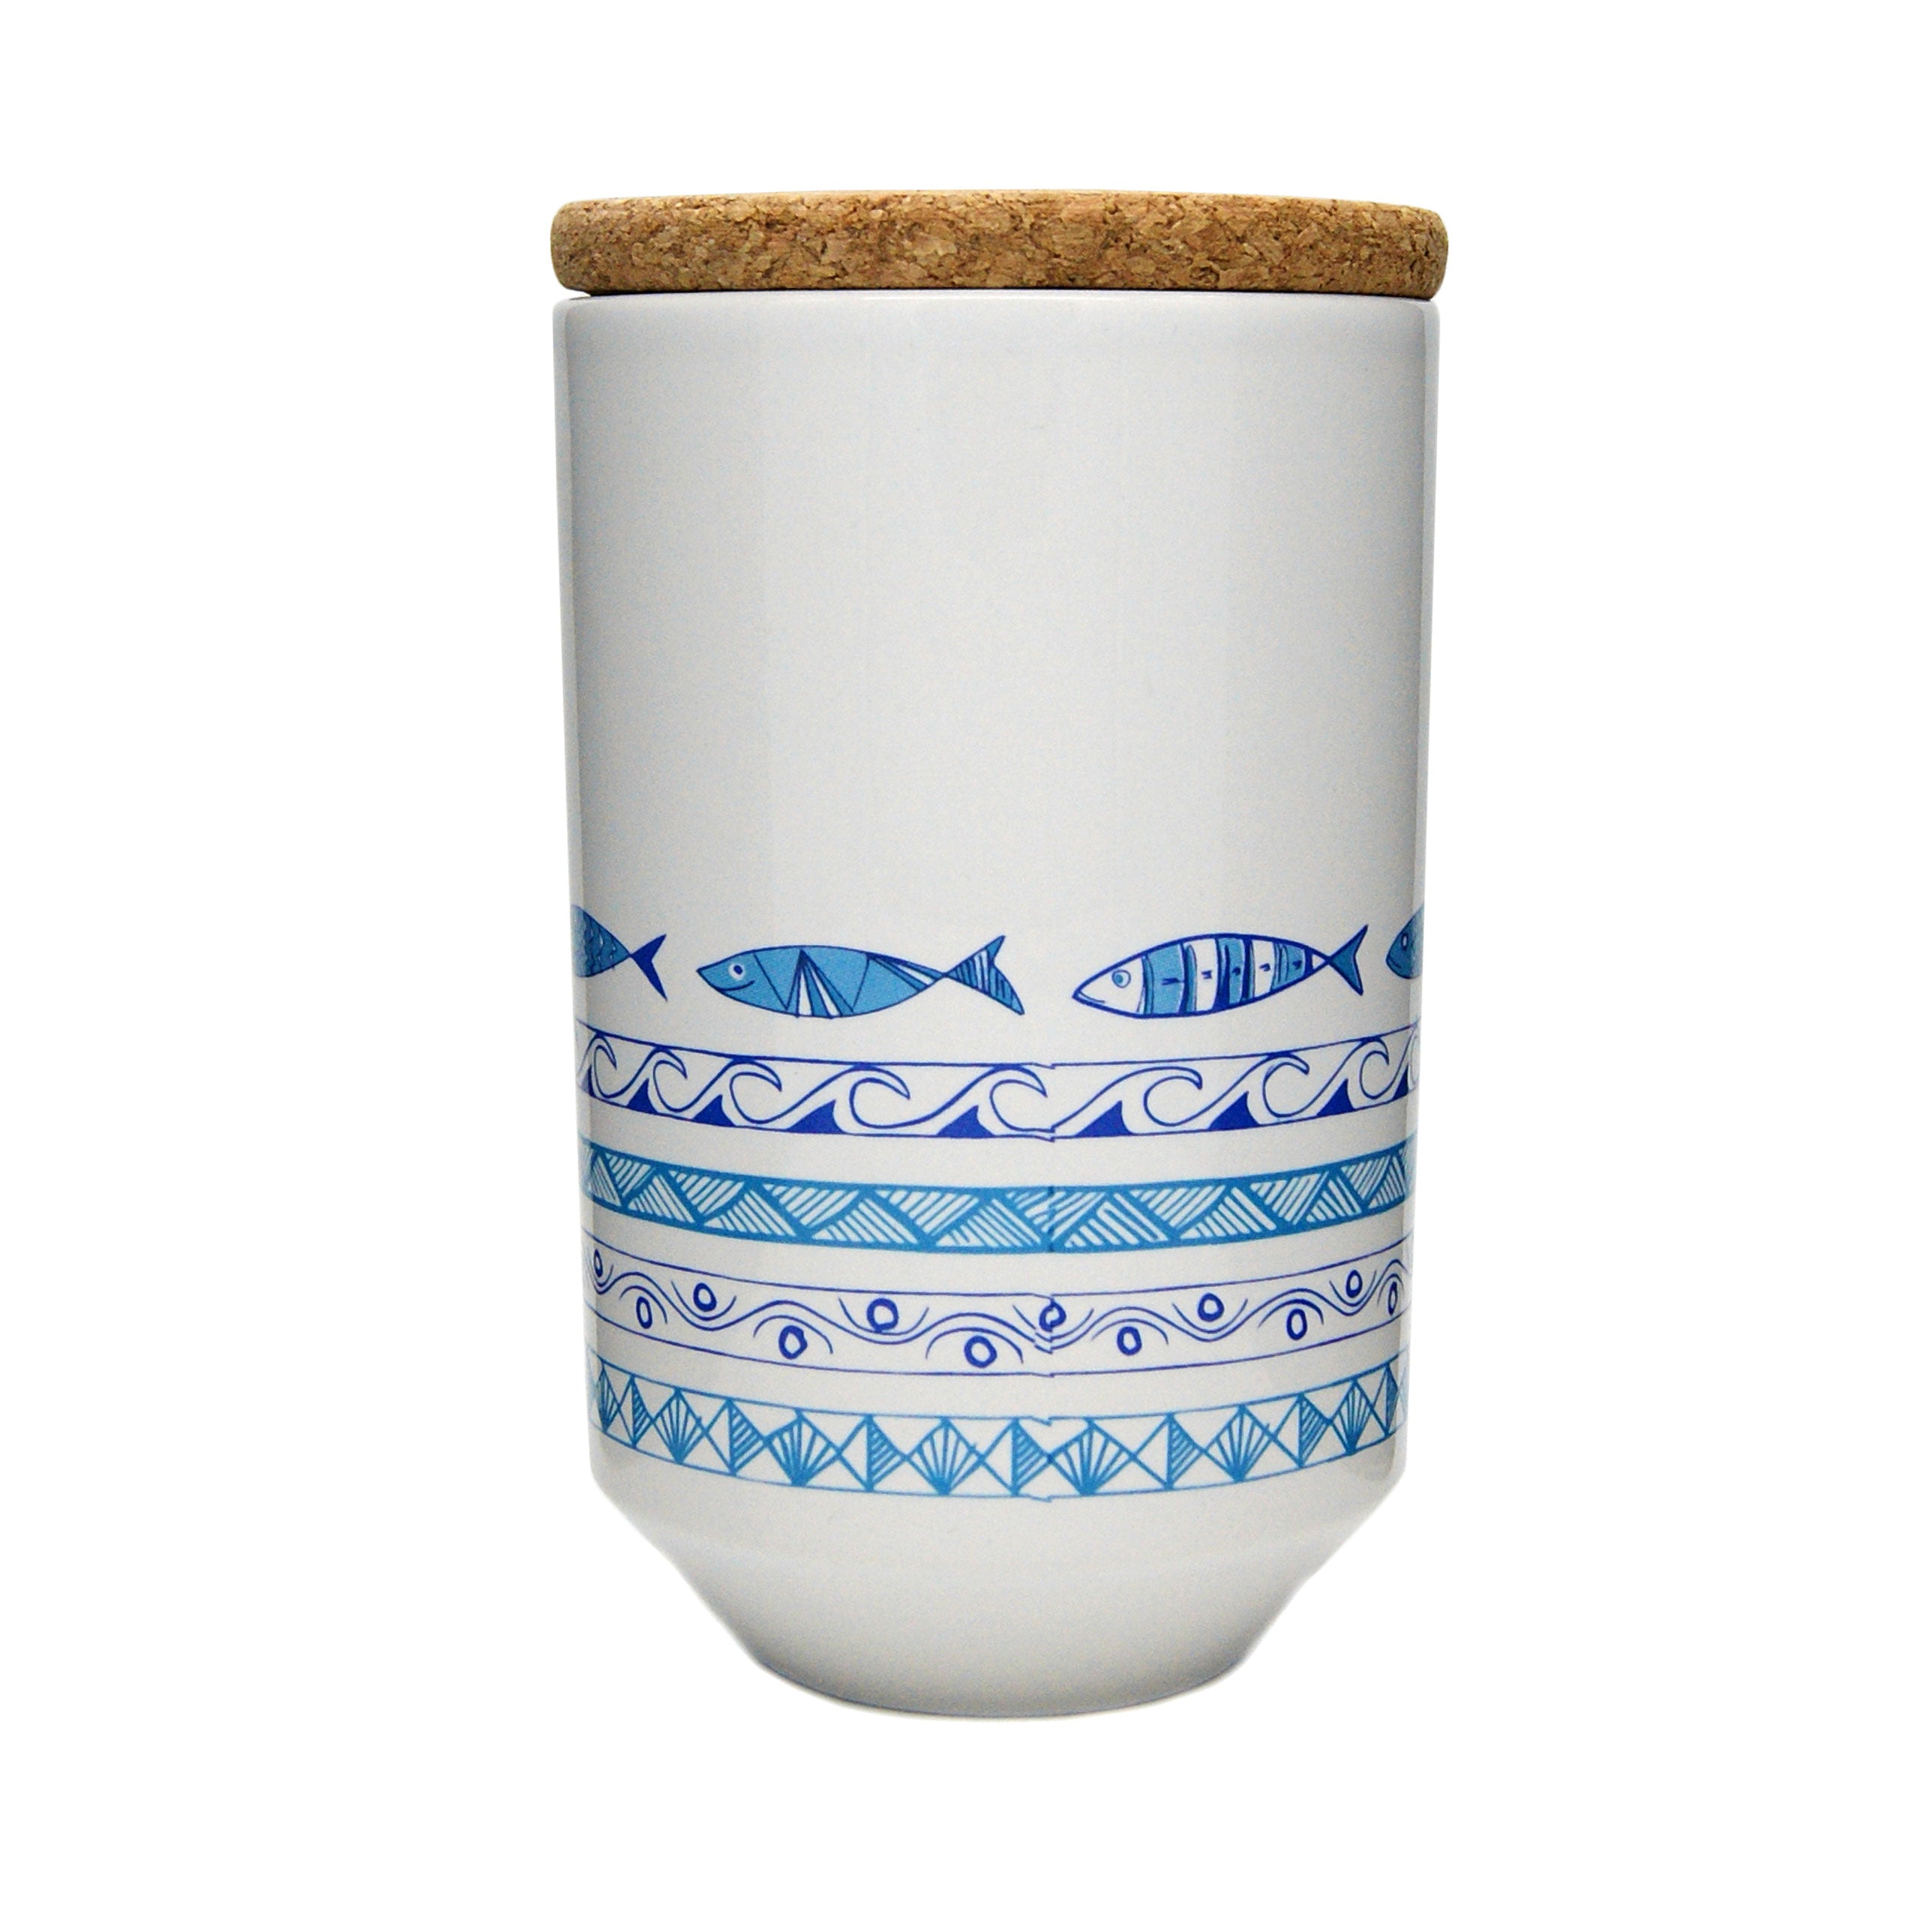 Portuguese ceramic tea cups with sardines decoration.